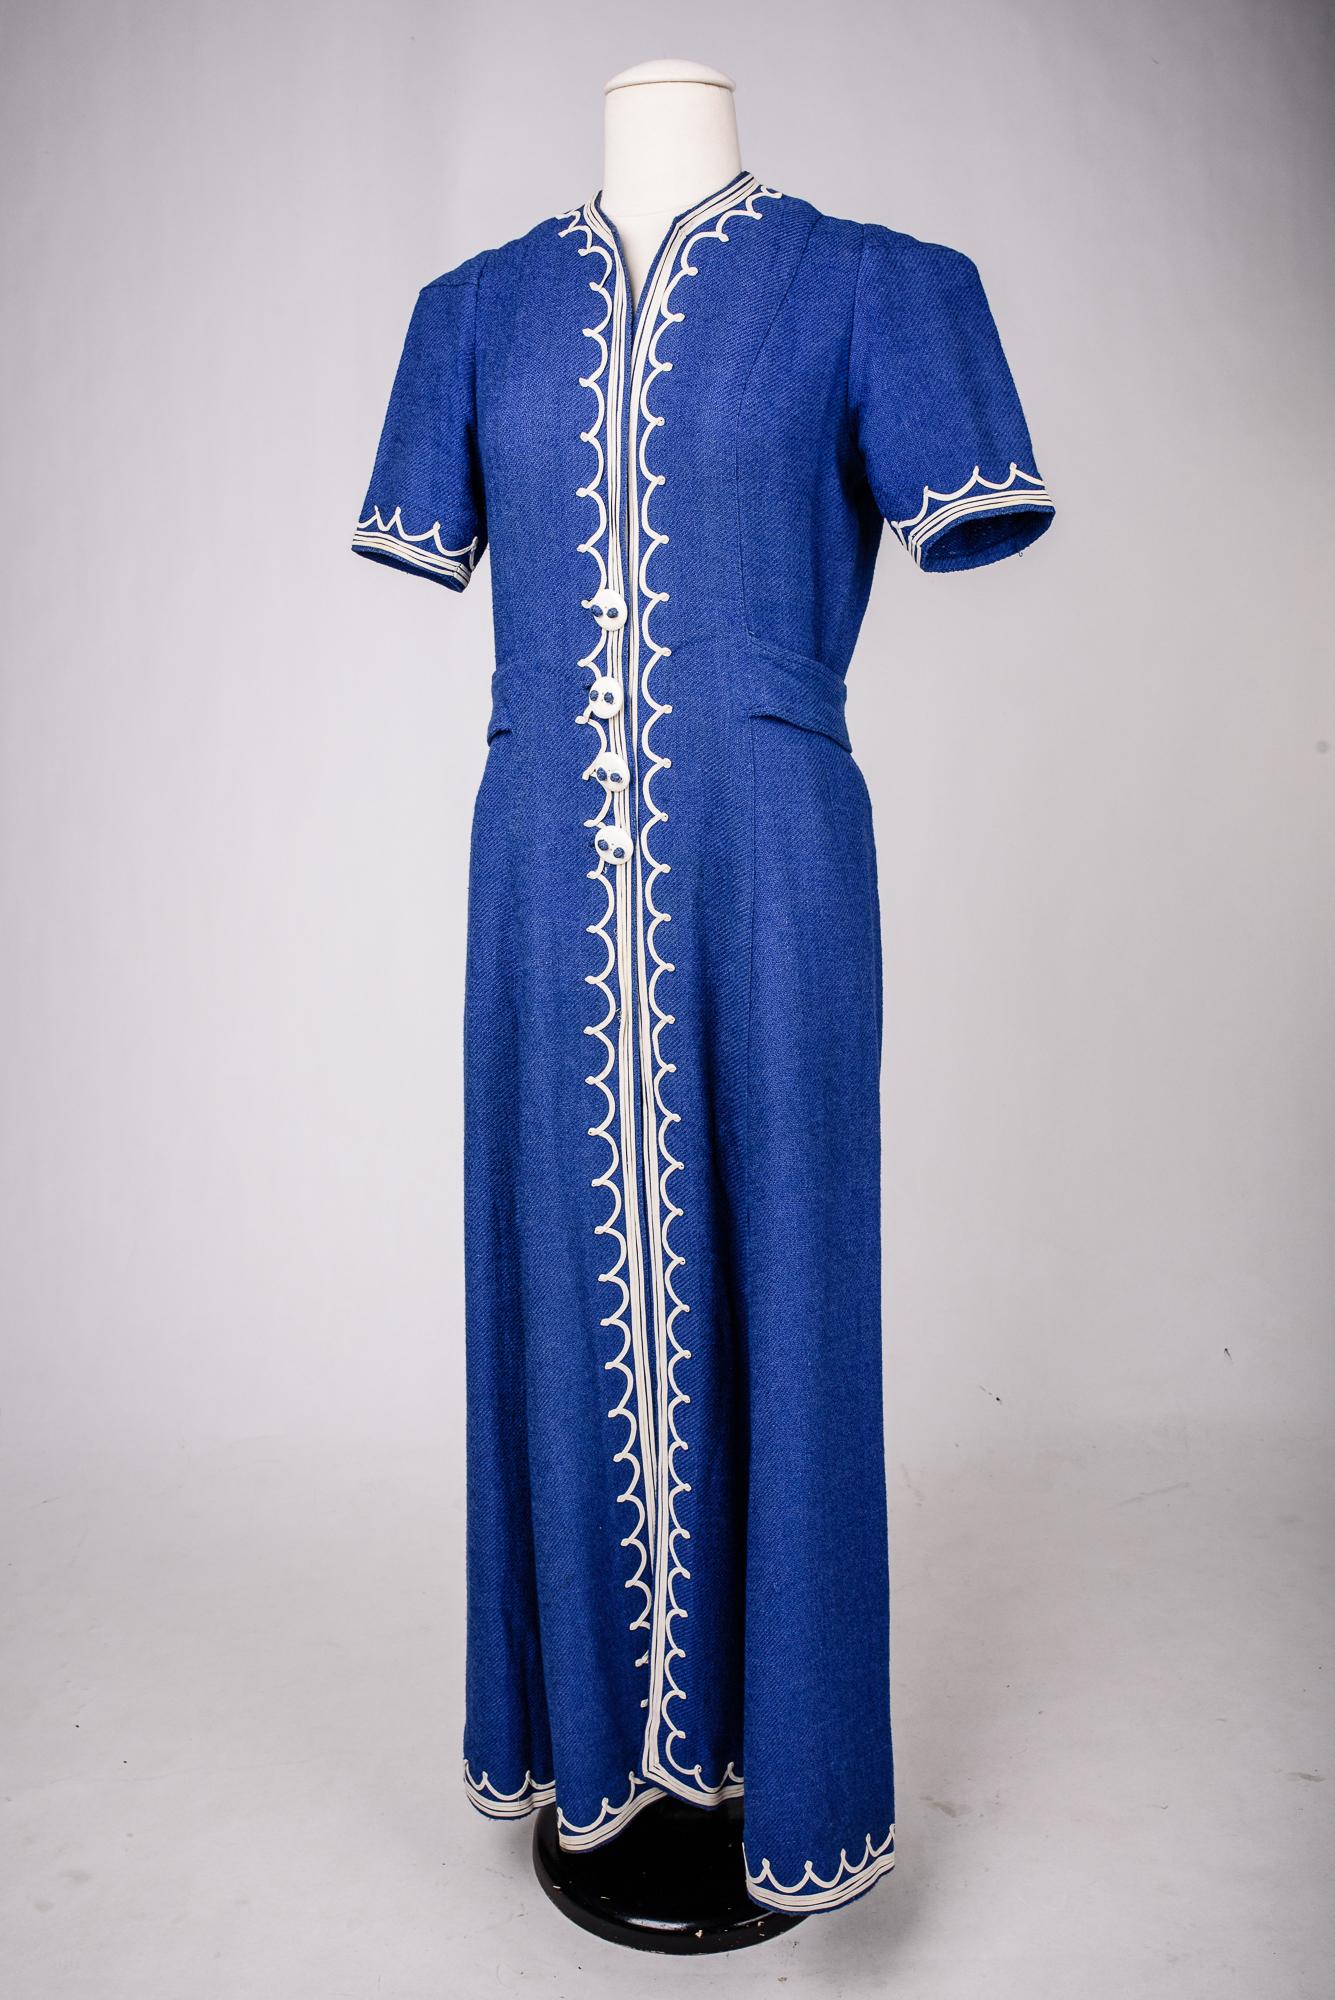 A Rare Blue Navy woollen dress by Henry à la Pensée - France Circa 1945 For Sale 3